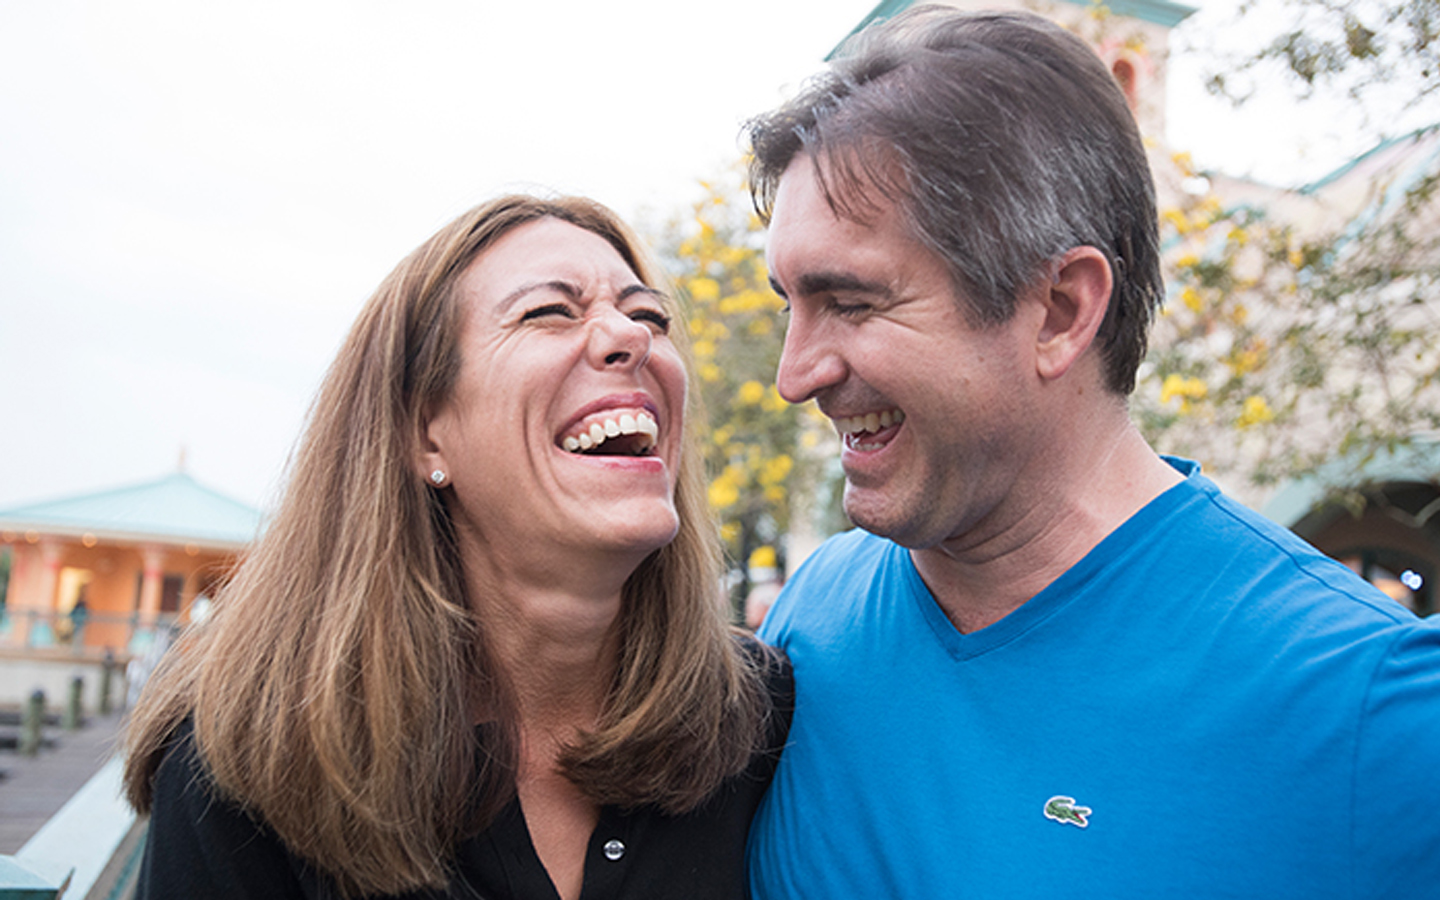 Een vrouw en man lachen samen op straat